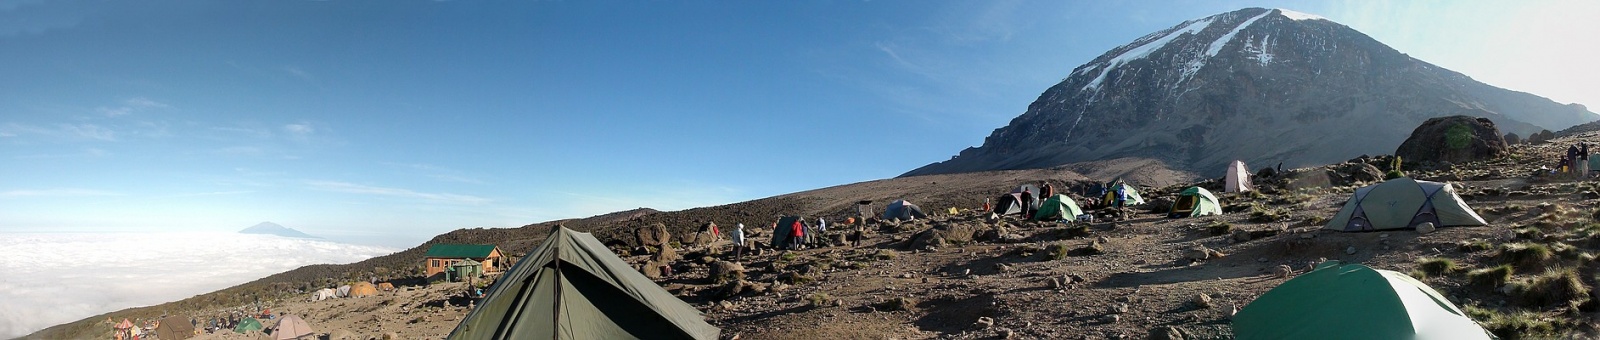 Im Karanga Camp (3.925 m.a.S.L.) mit Blick nach Nord-West zum Kibo - Juni 2014 - © Jens Teichmann [1] ... ↑ saftnase.de, Kilimanjaro-Tour 2014